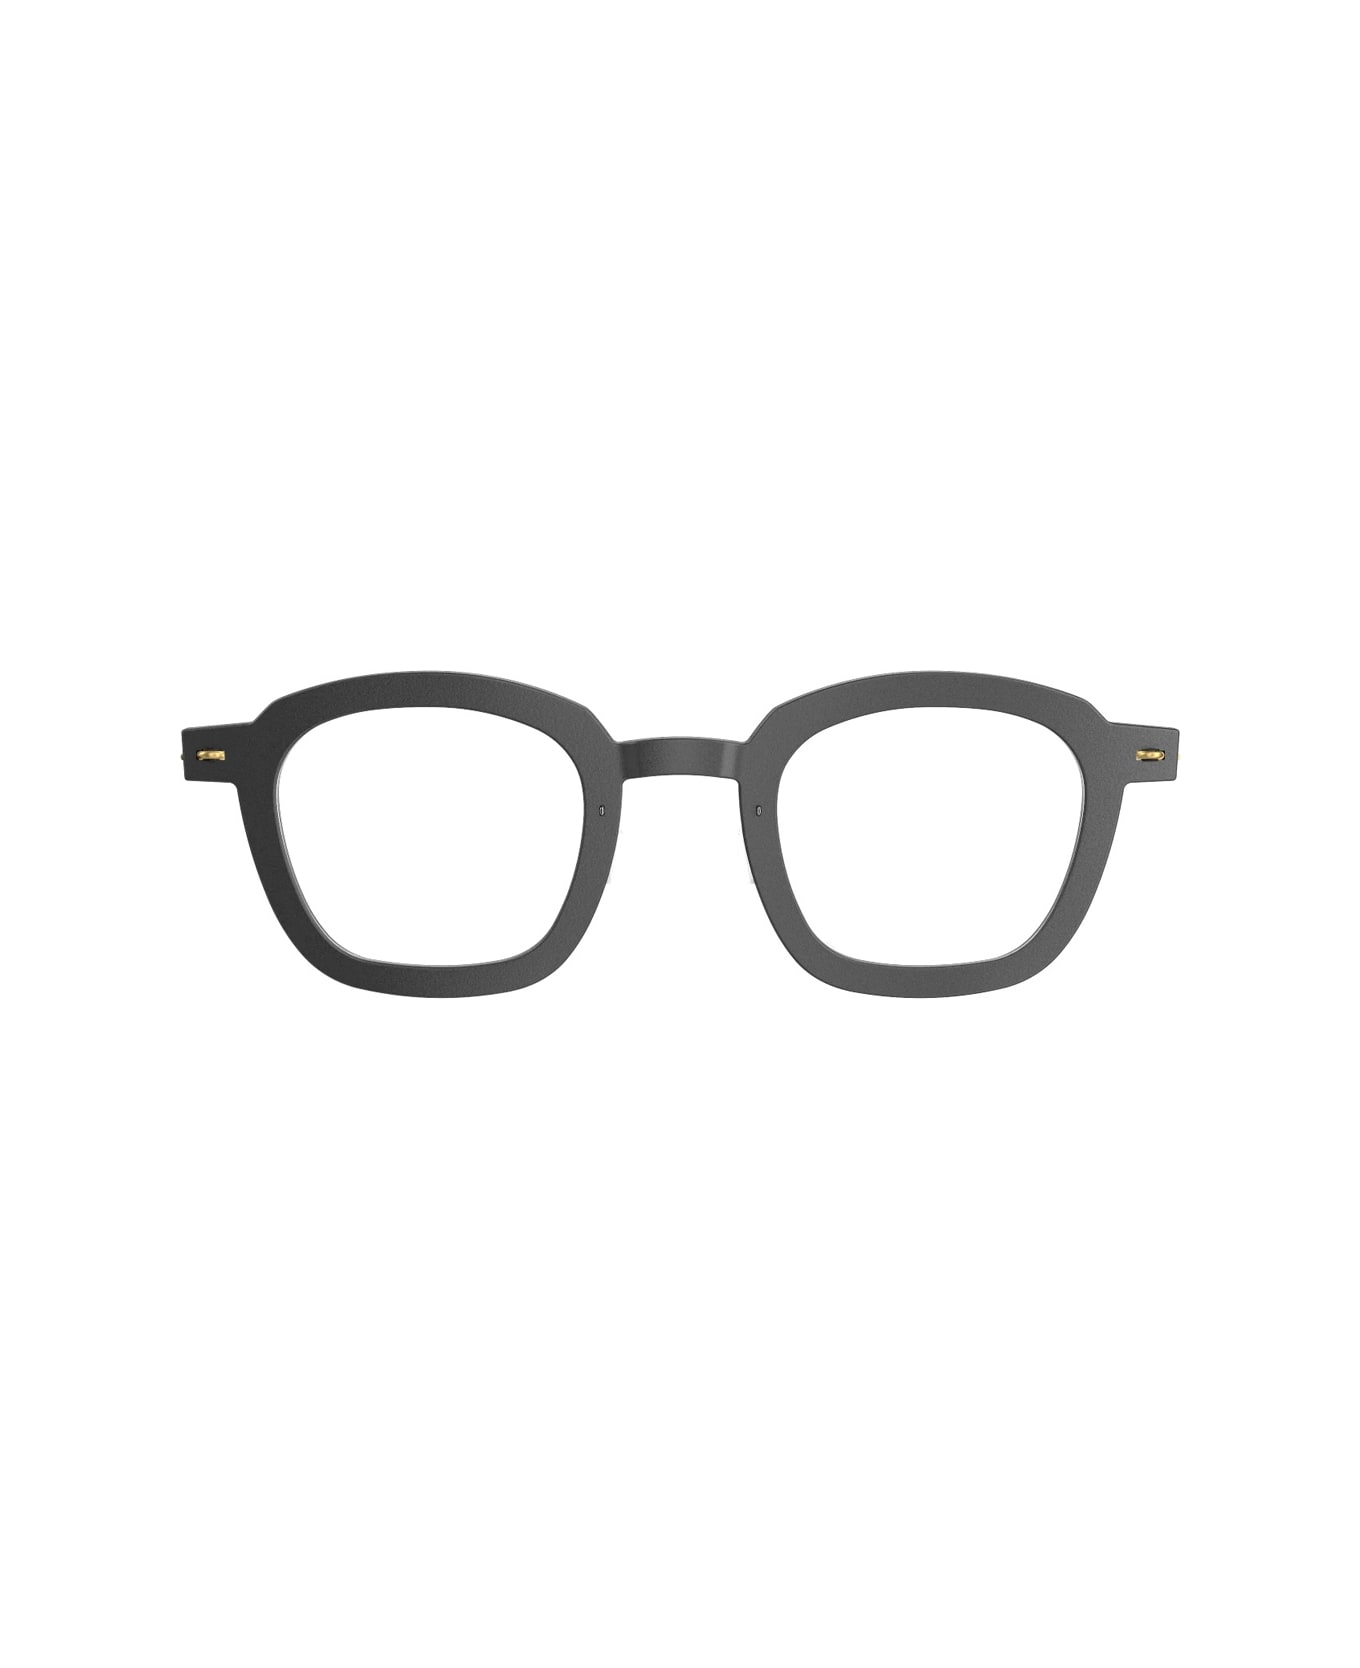 LINDBERG N.o.w. 6587 D16 - Pgt Glasses - Nero アイウェア